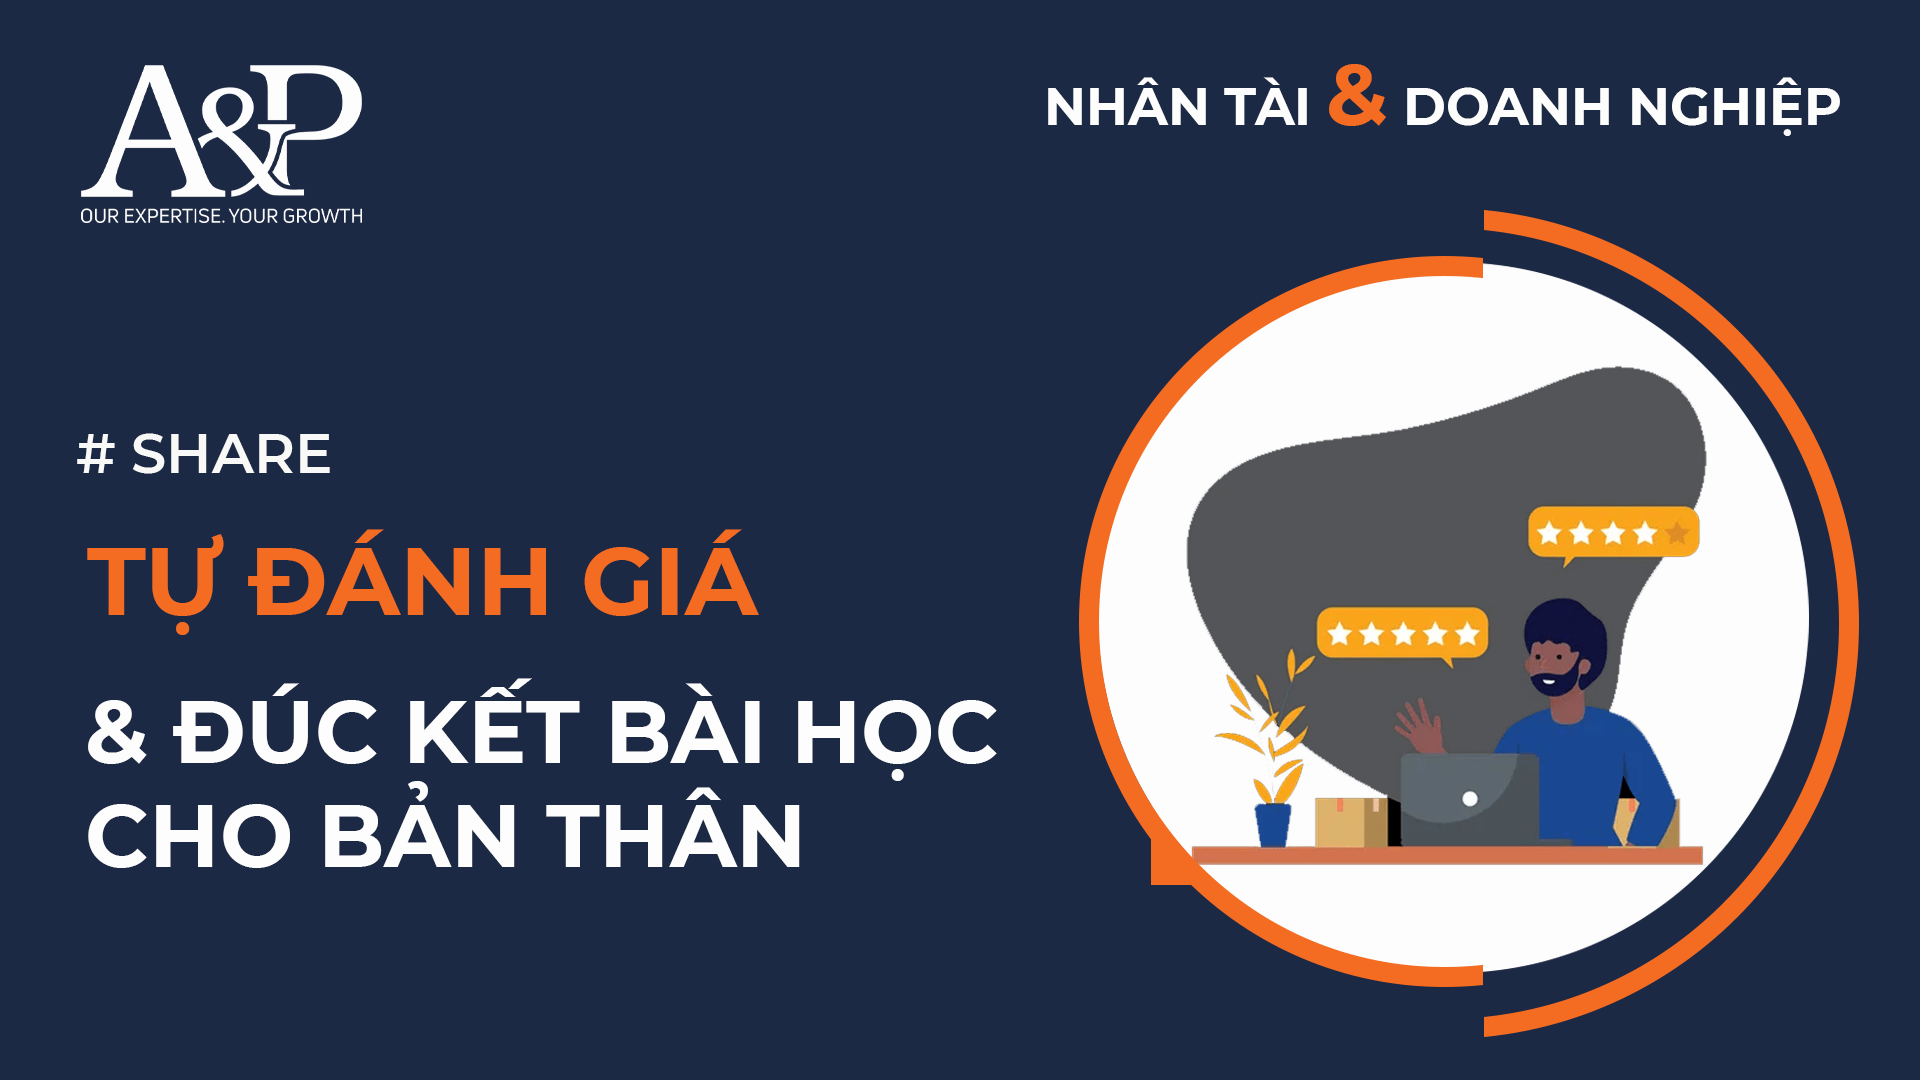 A&P Việt Nam chia sẻ cùng bạn các “bí kíp” giúp bạn không chỉ hội nhập thành công, mà còn tạo dấu ấn ngay trong giai đoạn chuyển tiếp